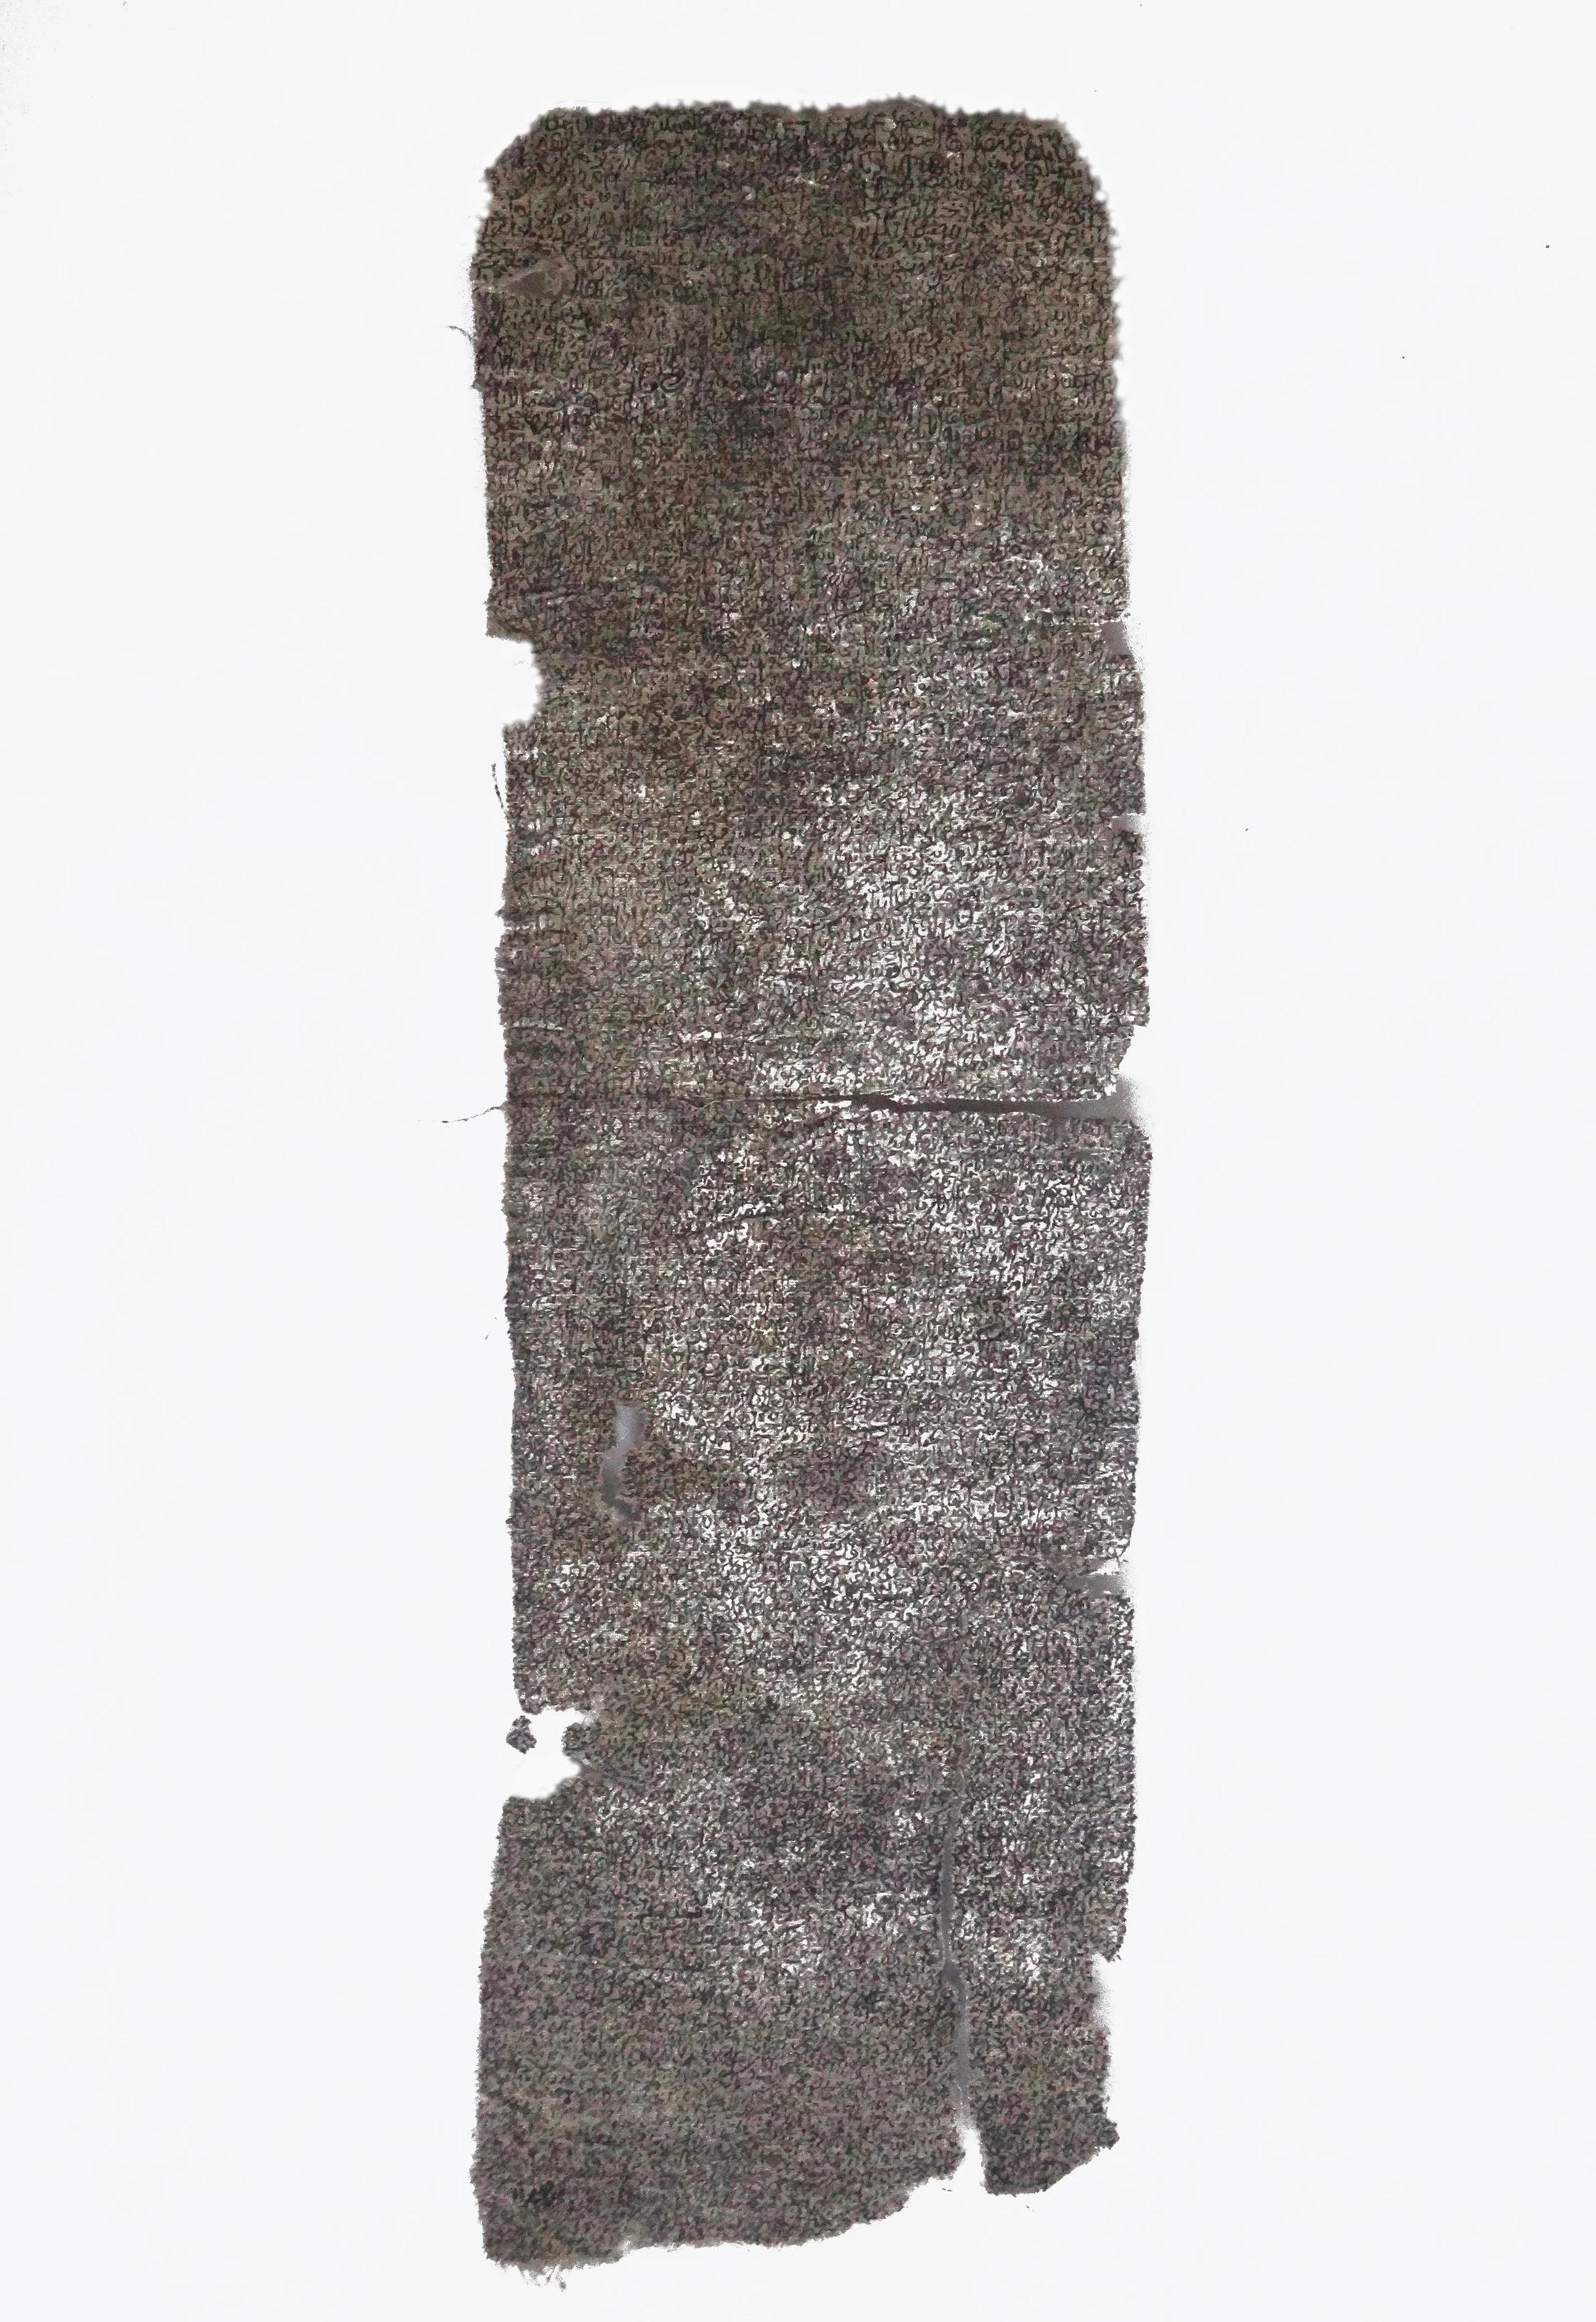 "Abstract Script 9" Tinte auf Stoff Gemälde 16" x 4" Zoll von Mohamed Monaiseer


In dieser Arbeit entwickle ich eine persönliche Philosophie der Dreifaltigkeit - die Vereinigung von drei in einem. Die Dreifaltigkeit besteht aus Energie, Nature und